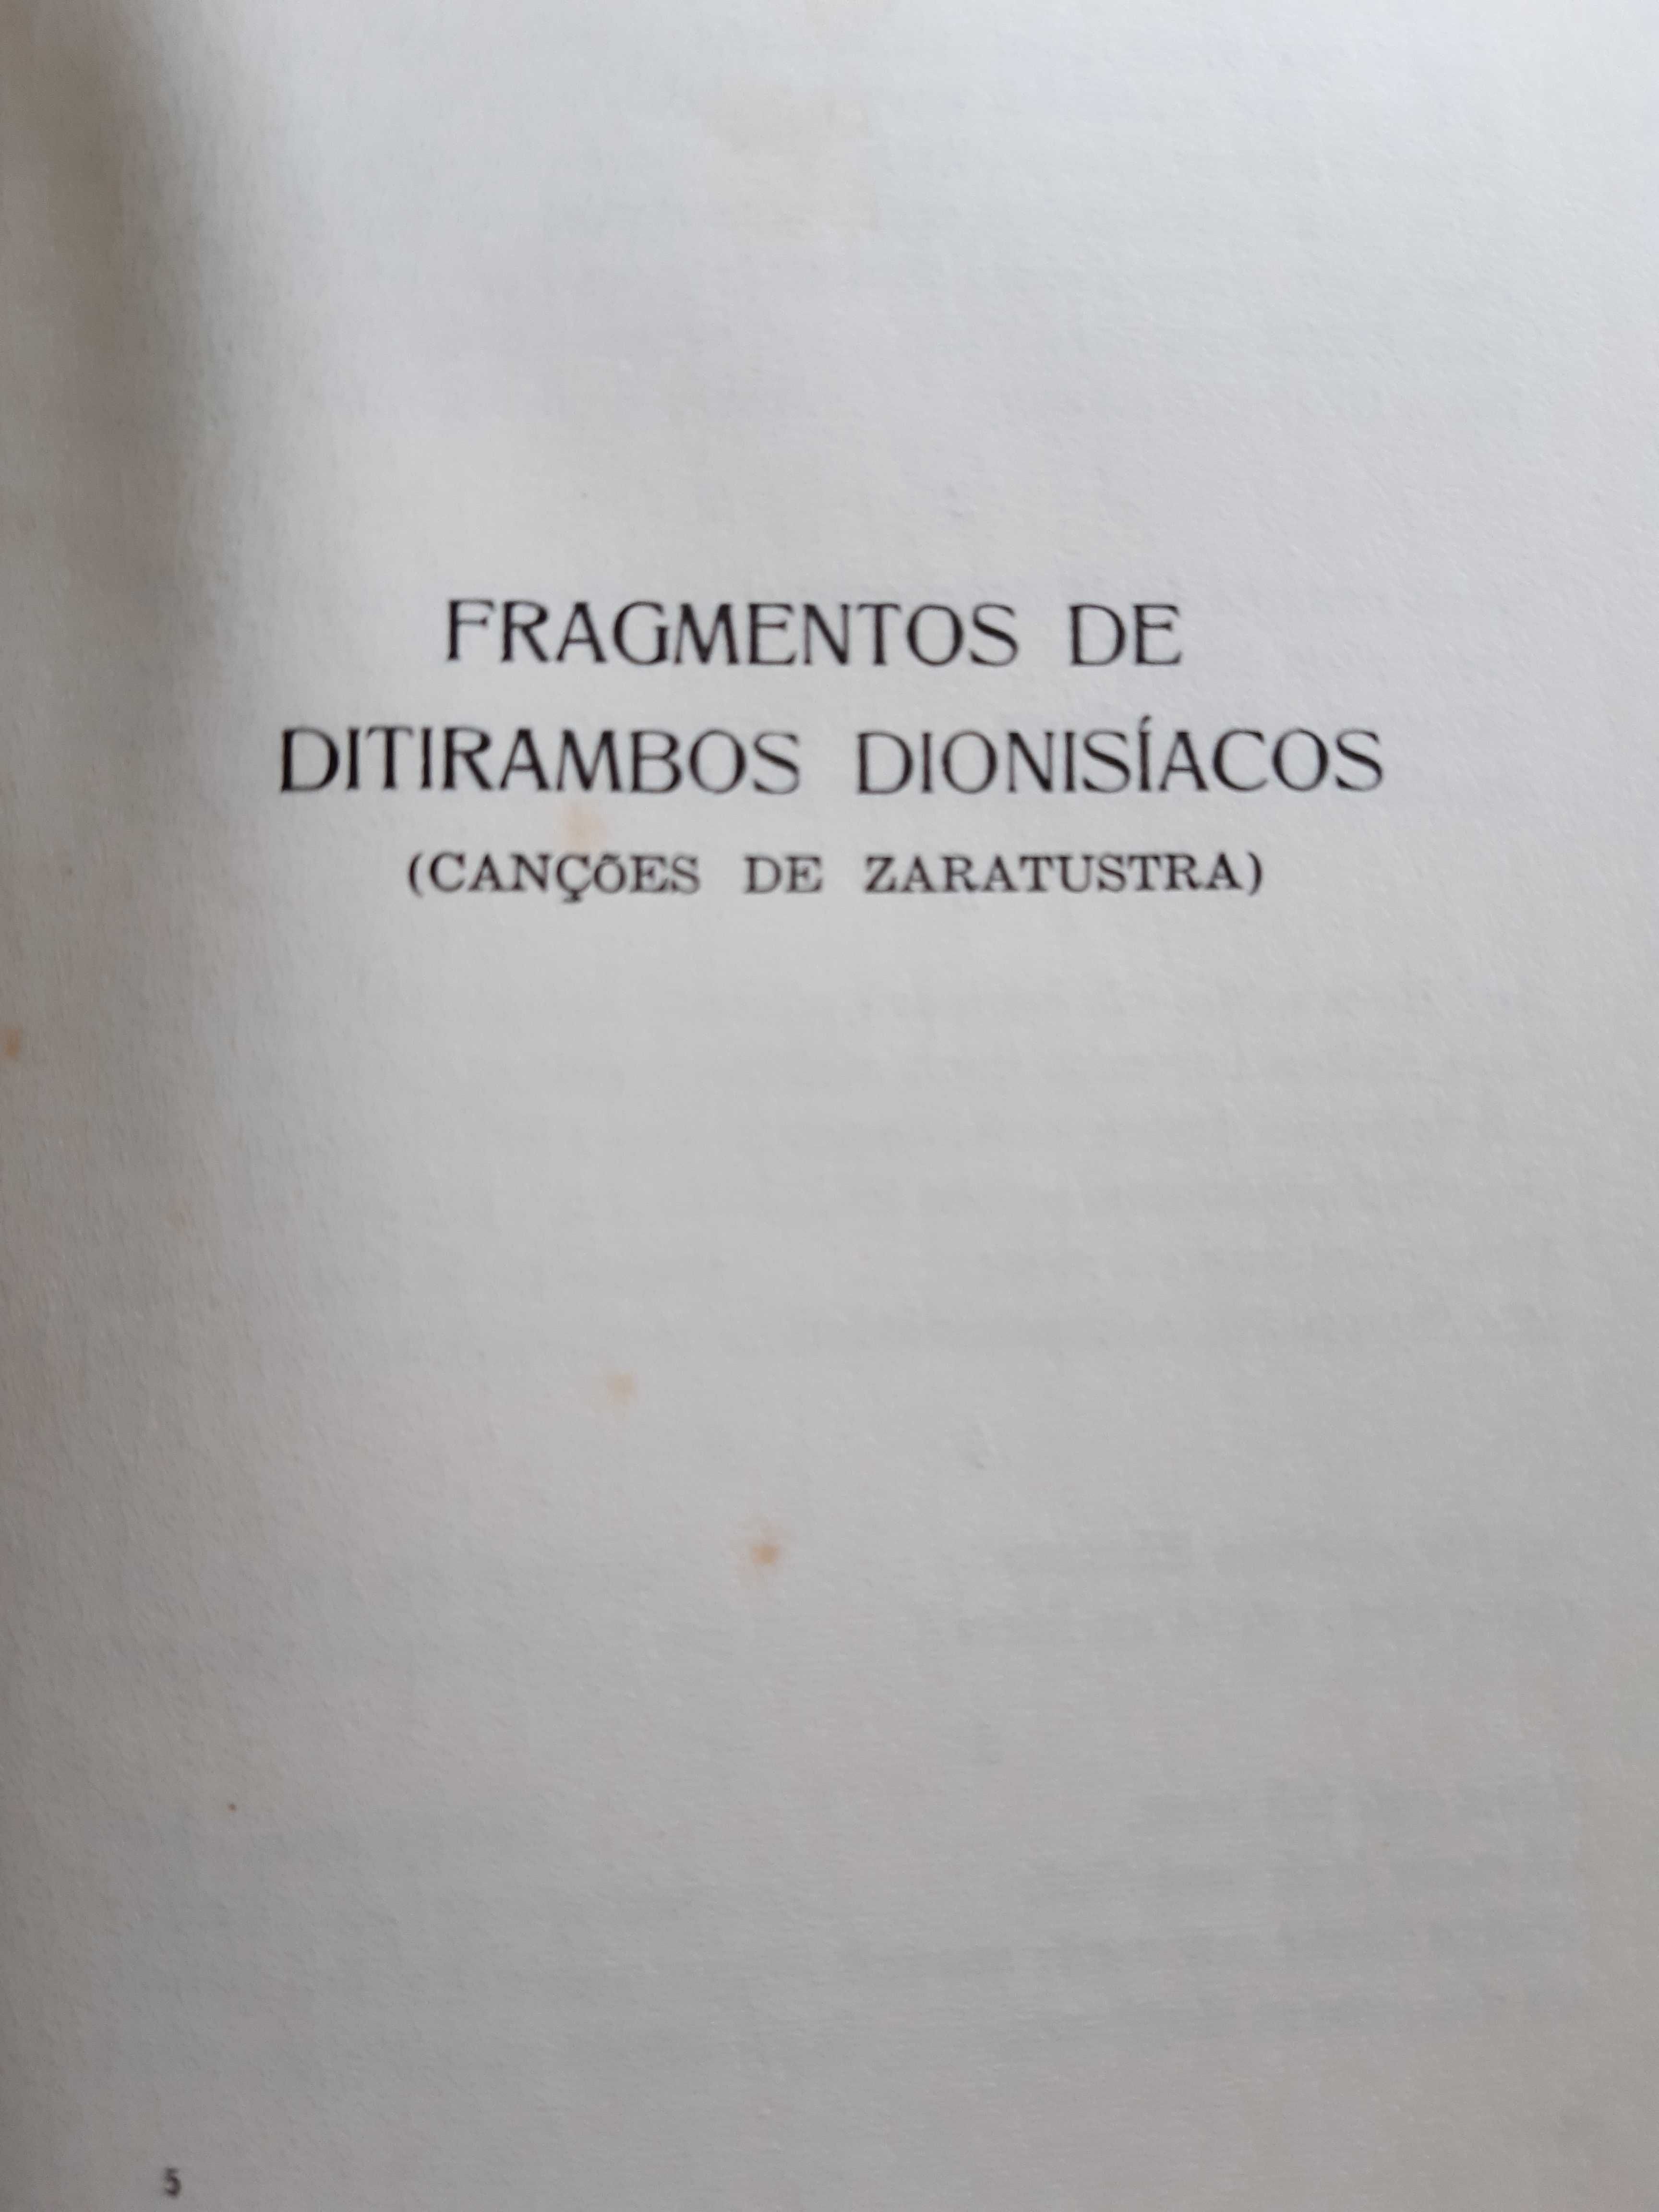 Poemas de F. Nietzsche - edição bilingue - Editora Galaica - 1960